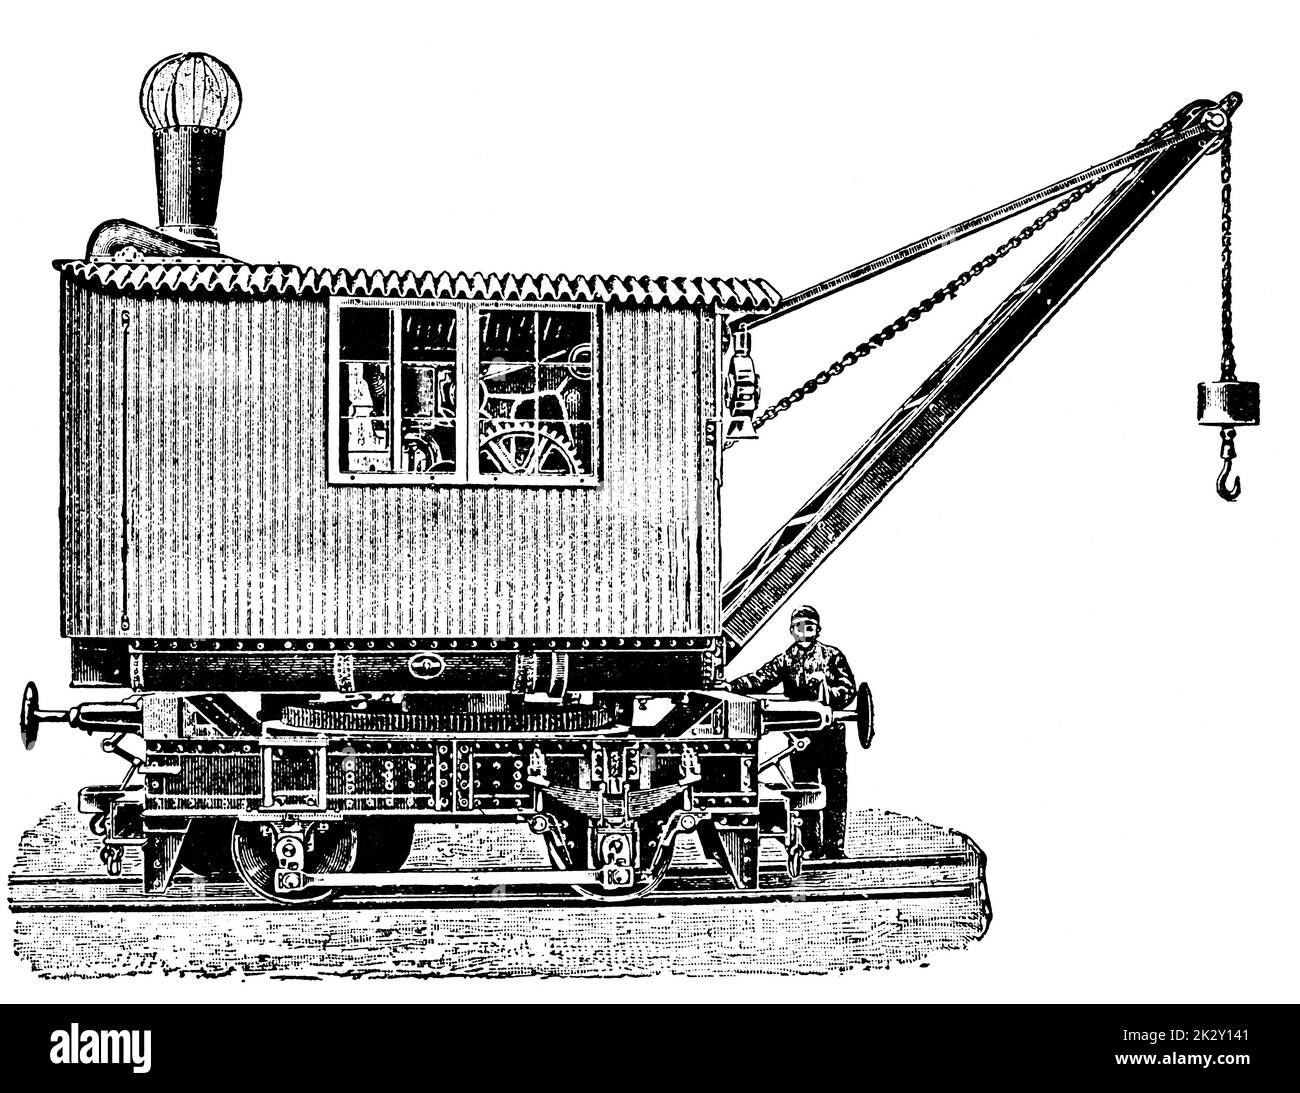 Grue à vapeur. Illustration du 19e siècle. Allemagne. Arrière-plan blanc. Banque D'Images